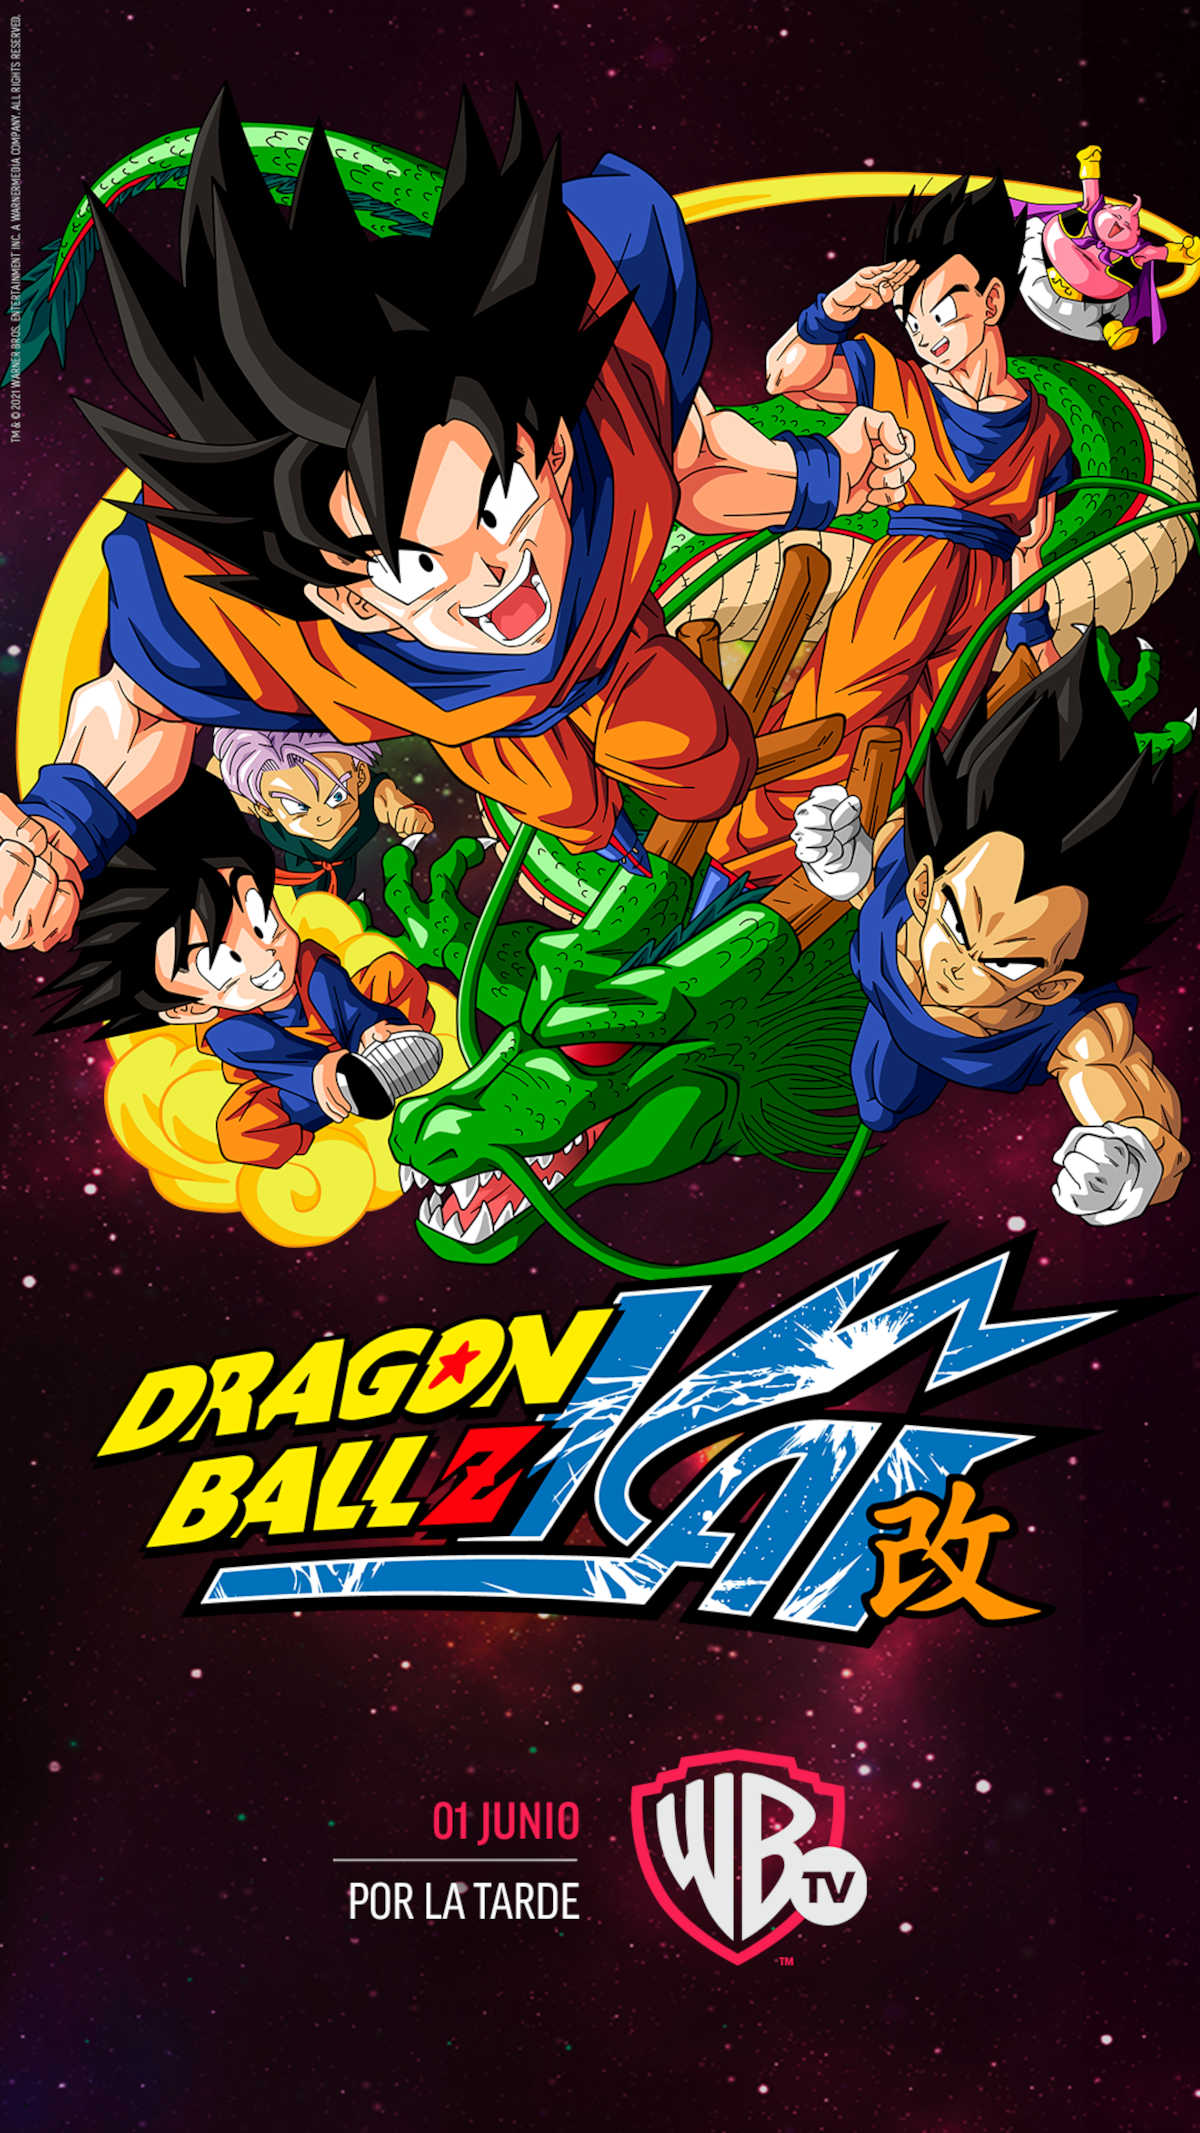 Dragon Ball Kai estará disponible en Warner Channel